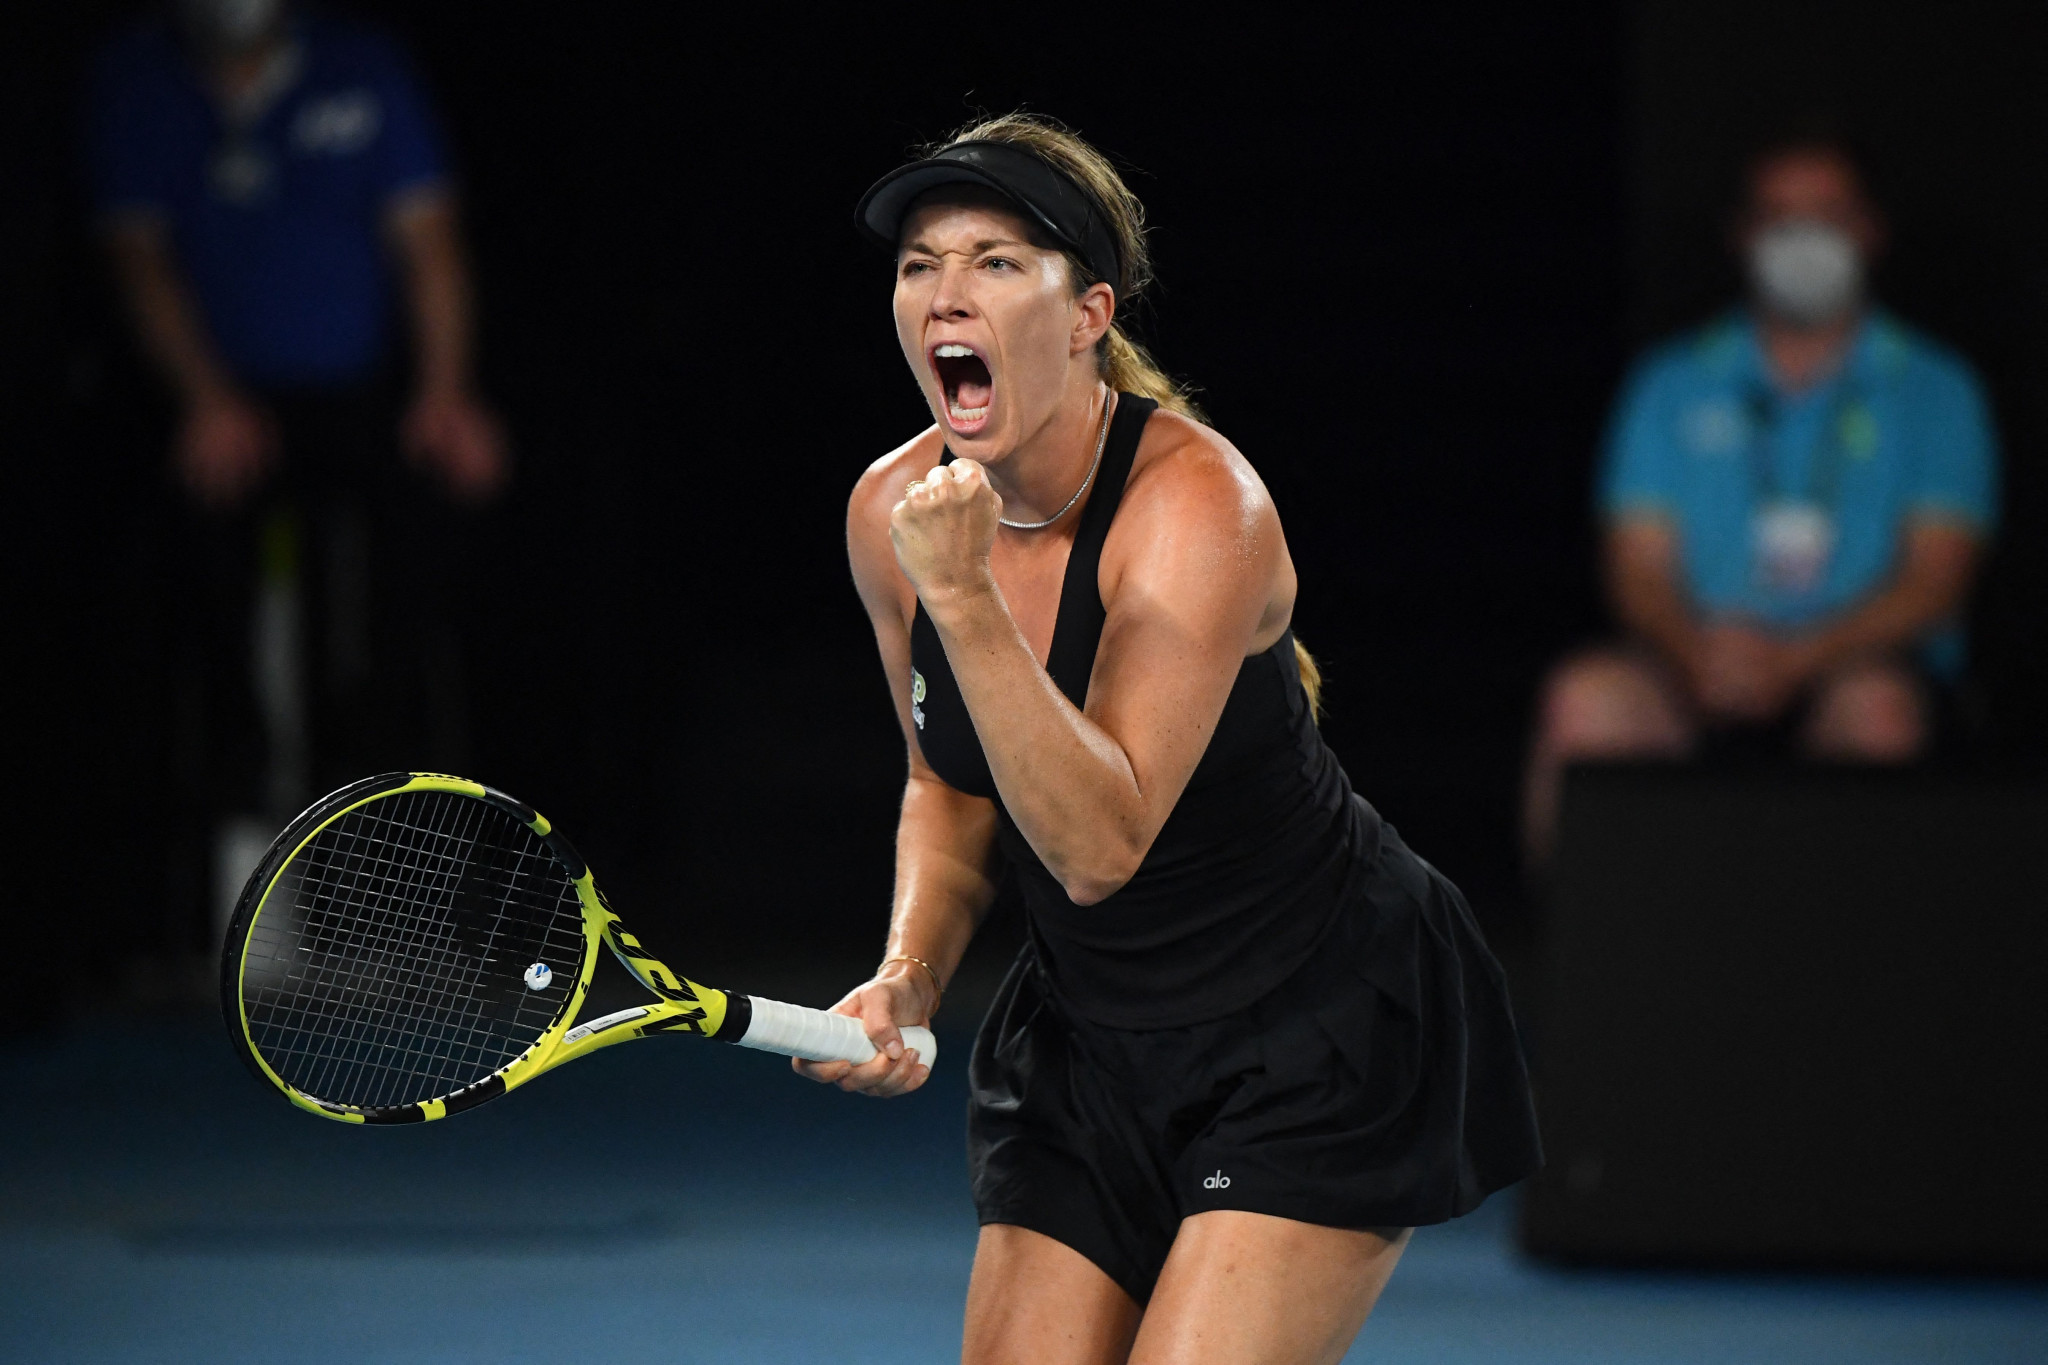 Barty to face Collins in Australian Open women's singles final